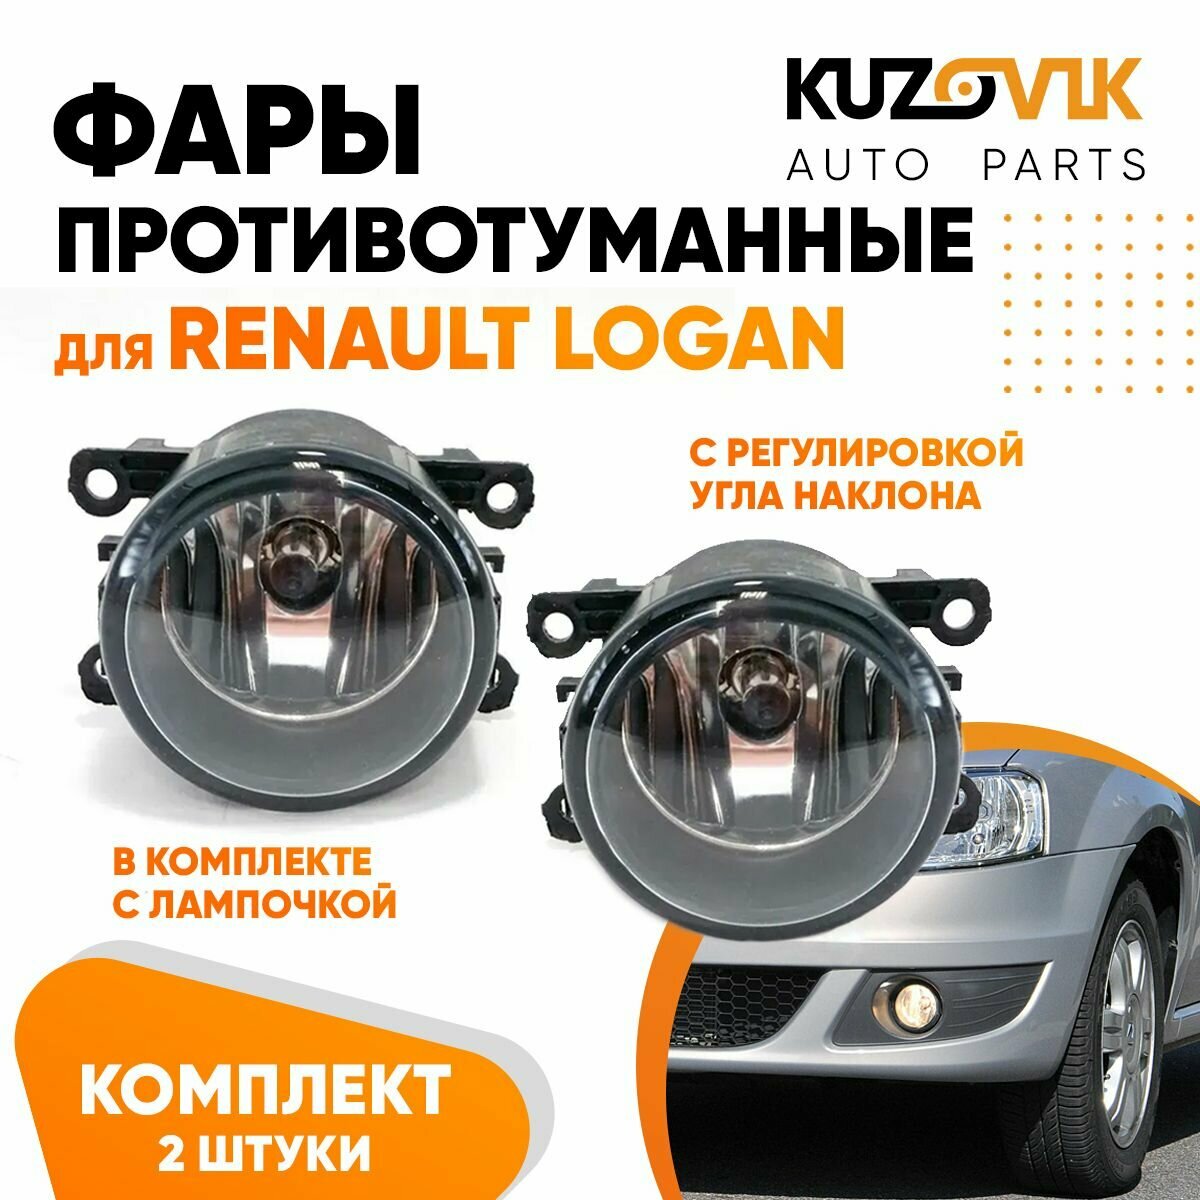 Фара противотуманная для Рено Логан Renault Logan с регулировкой угла наклона и лампочкой 1 штука левая /правая туманка птф